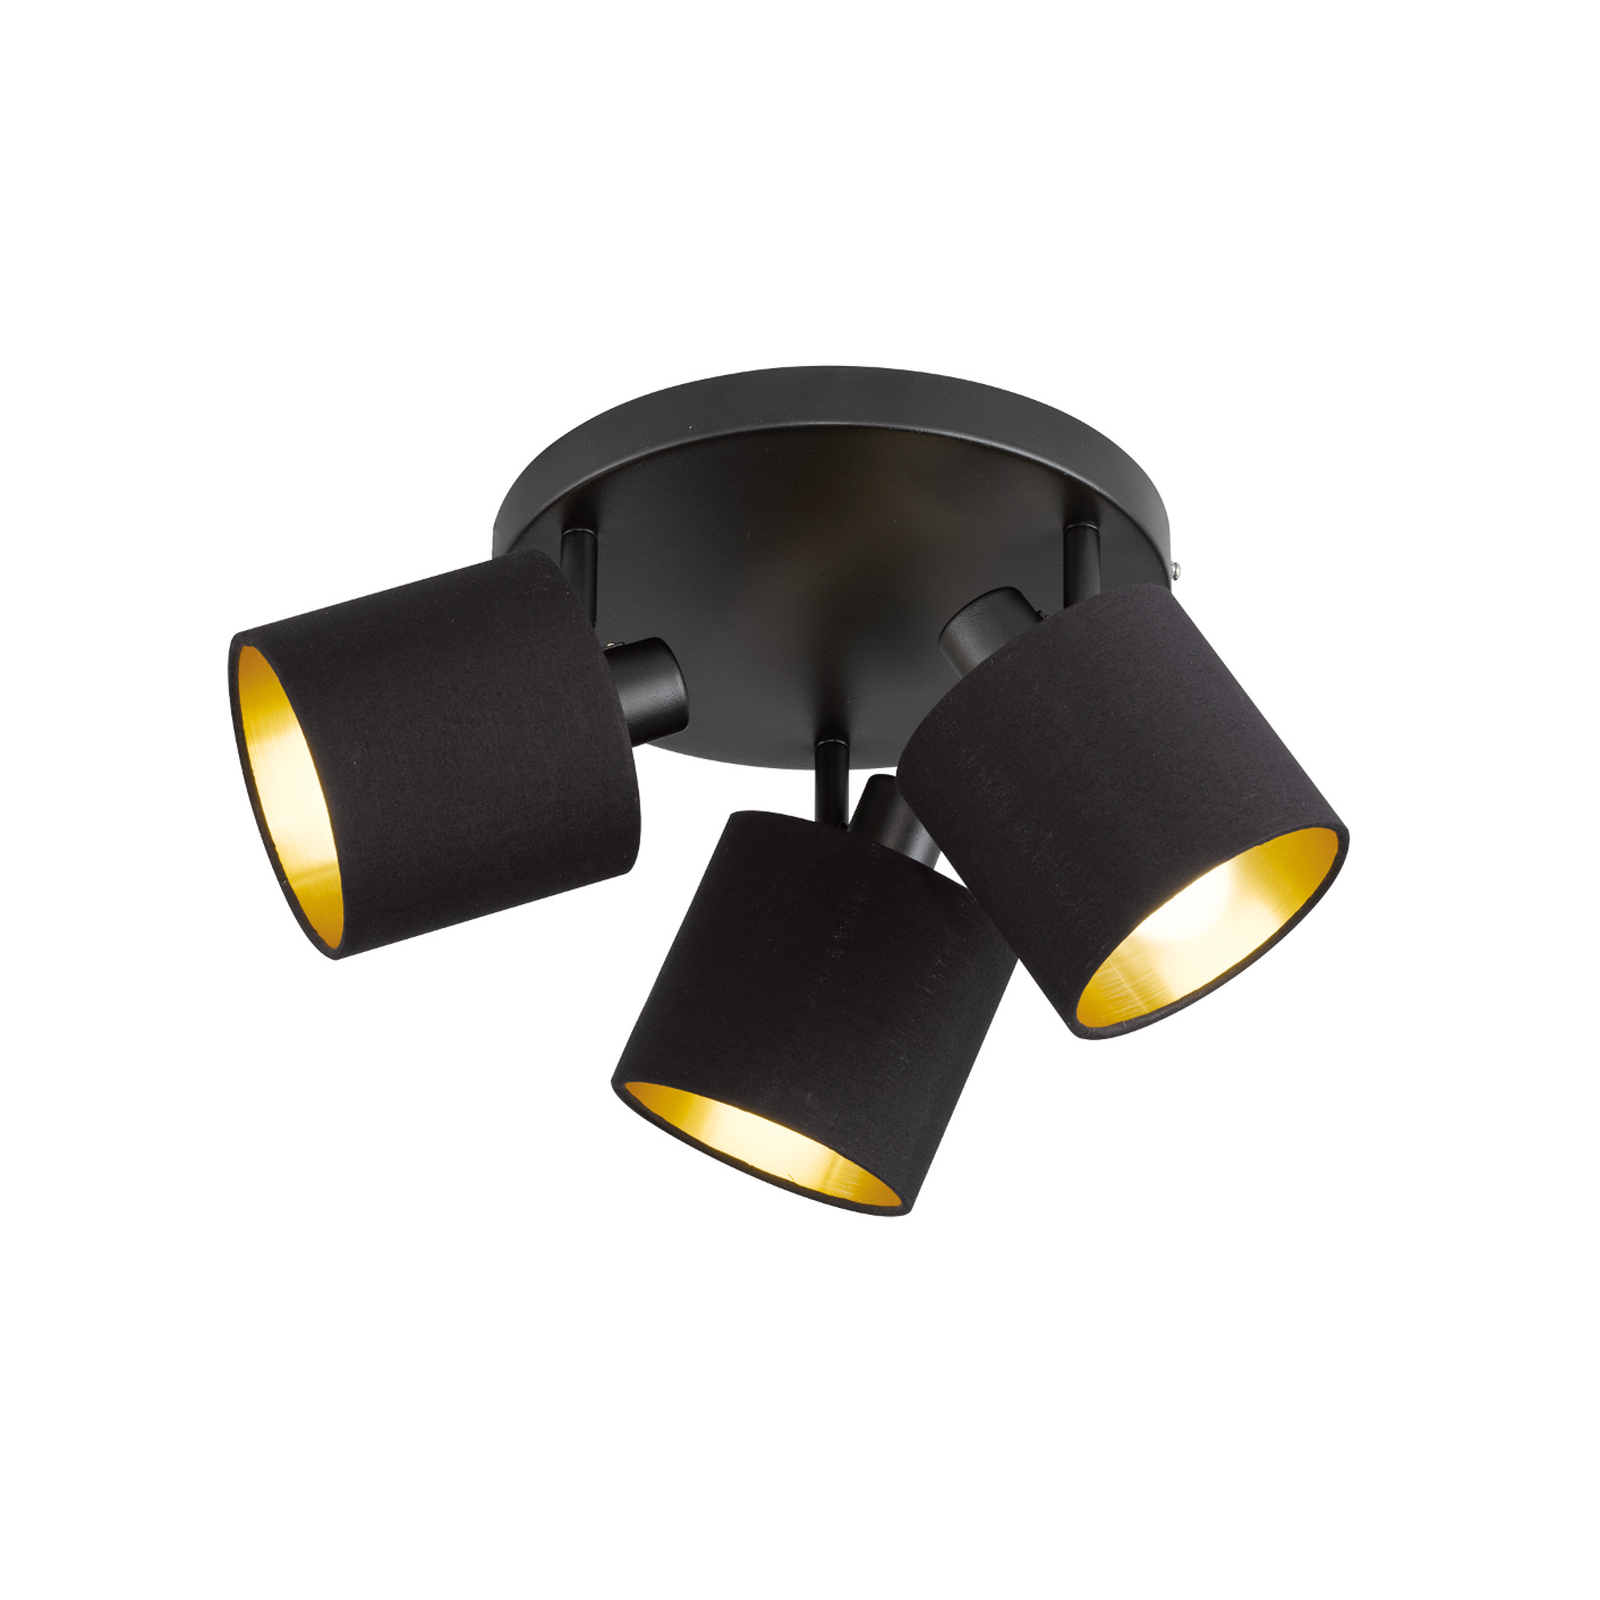 Tommy downlight, black/gold, Ø 25 cm, 3-bulb, fabric